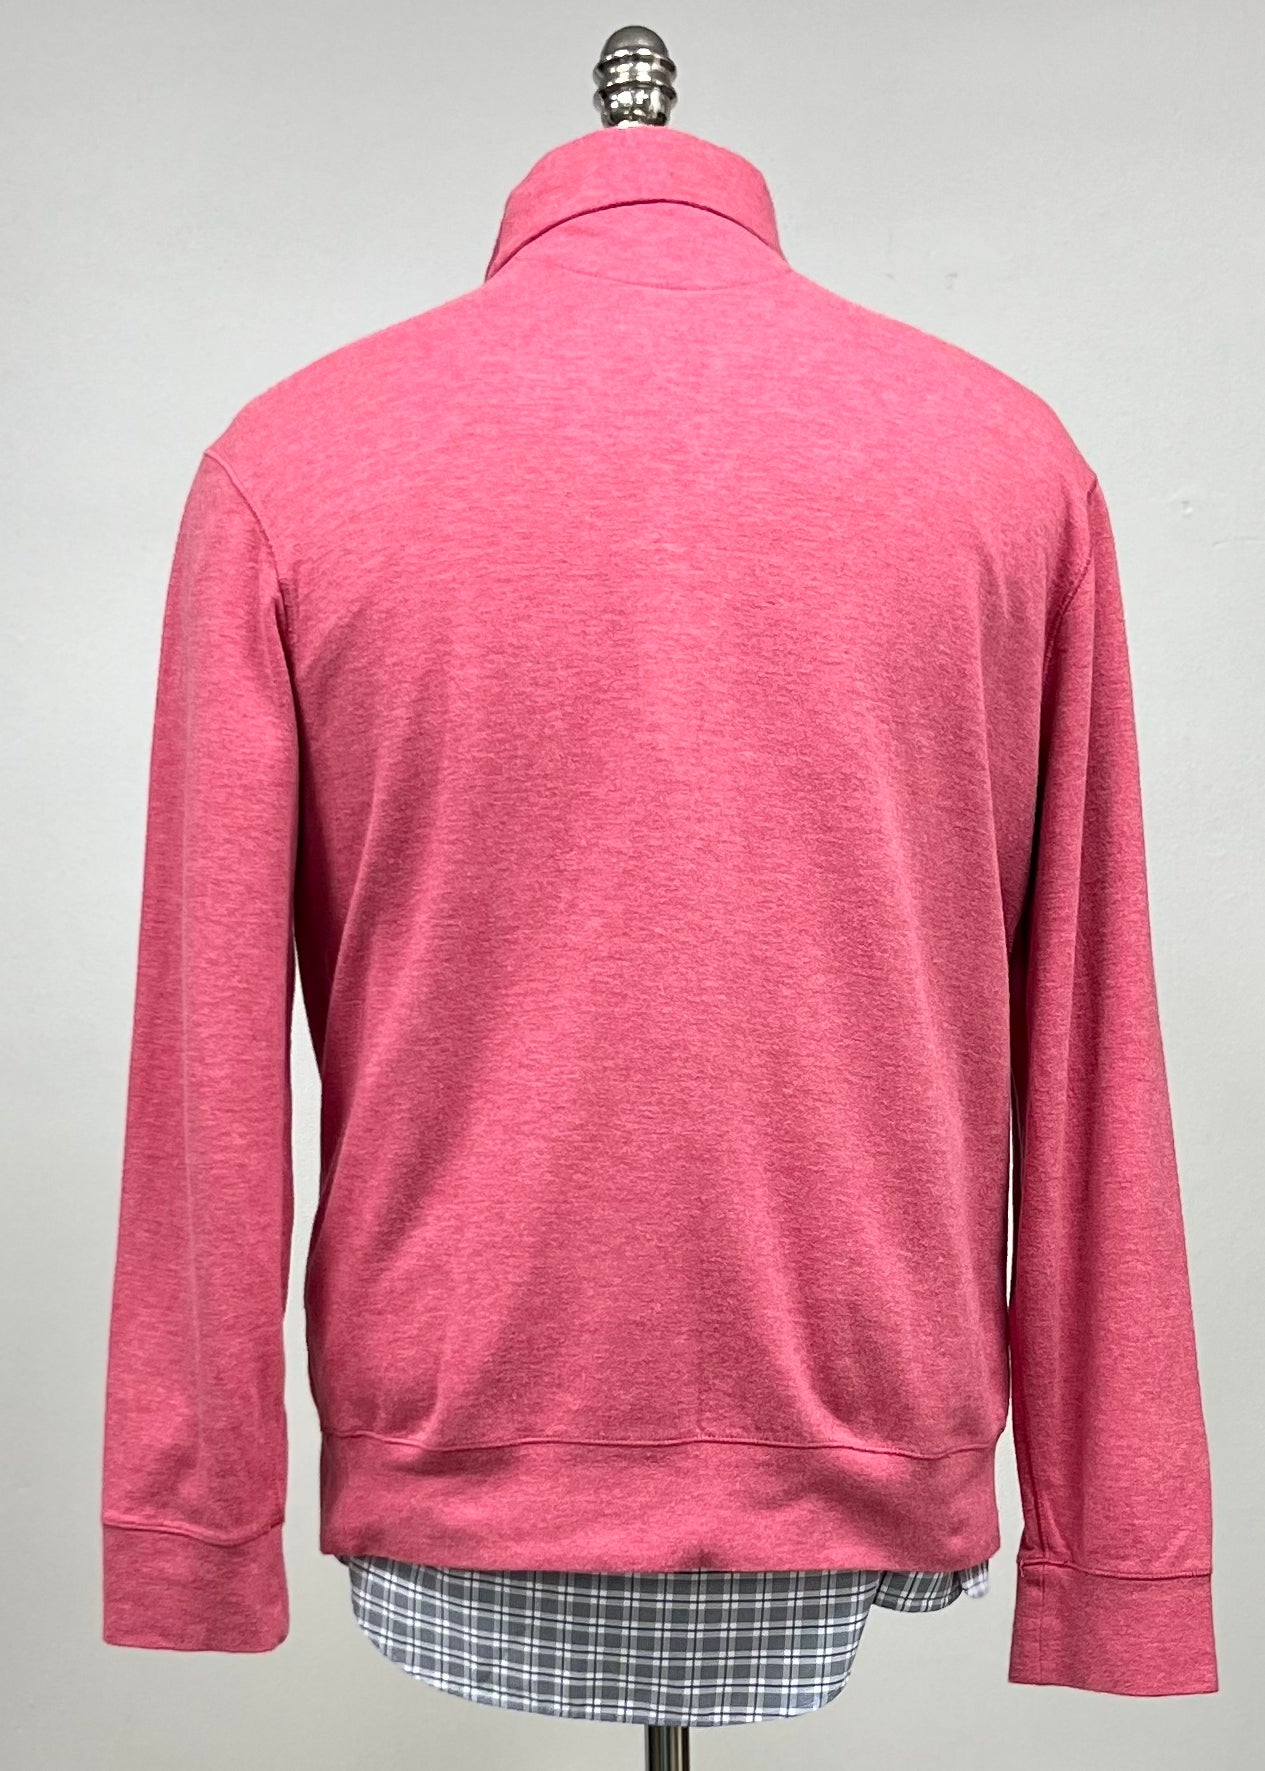 Sueter Jersey Polo Ralph Lauren 🏇🏼 color rosado magenta con logo azul navy Talla M